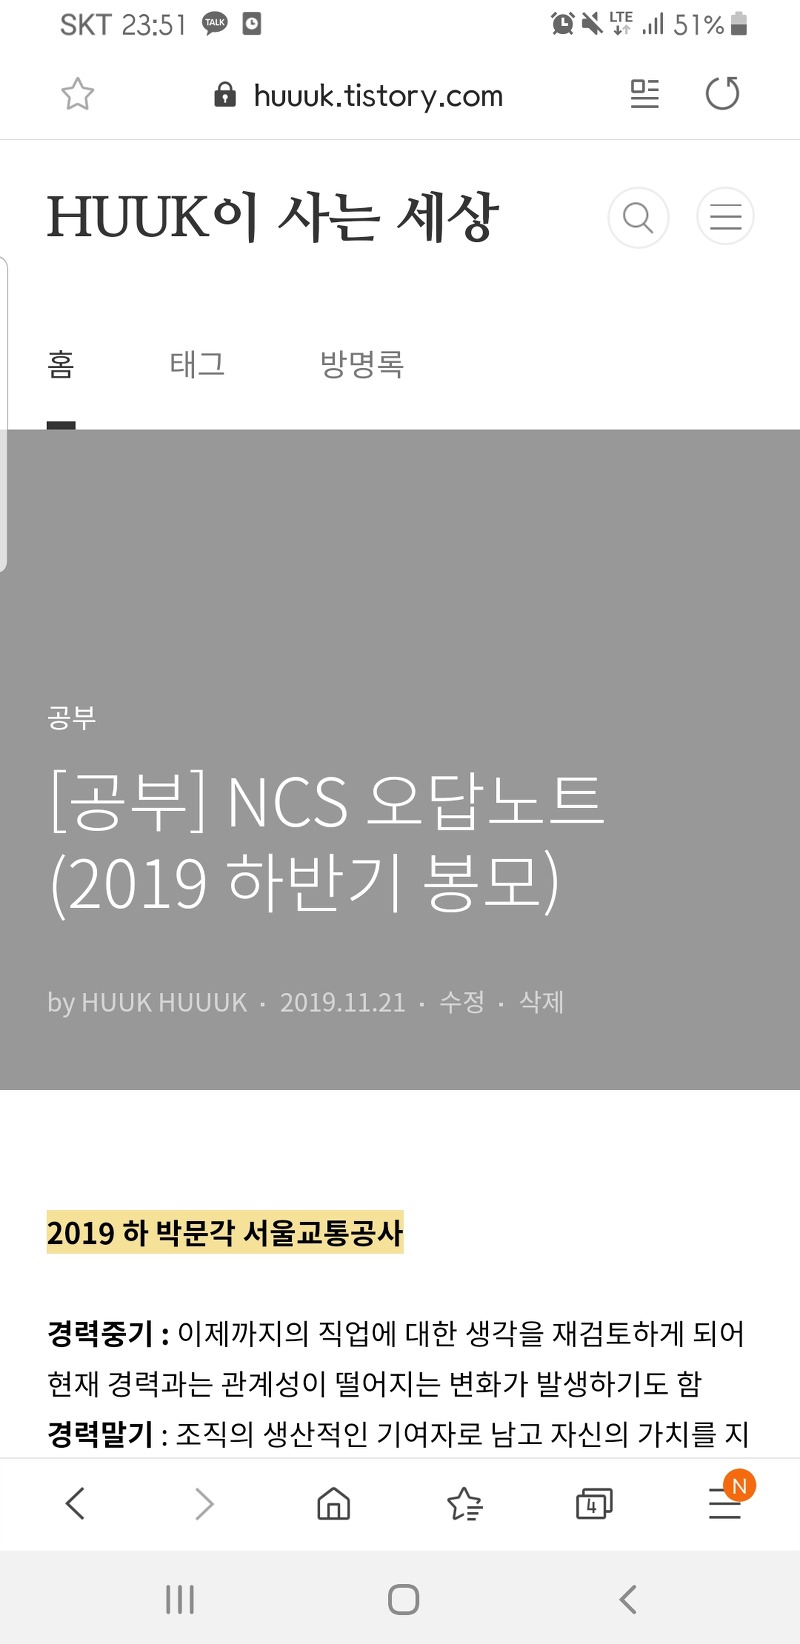 NCS 오답노트 (2019 하반기 봉모)